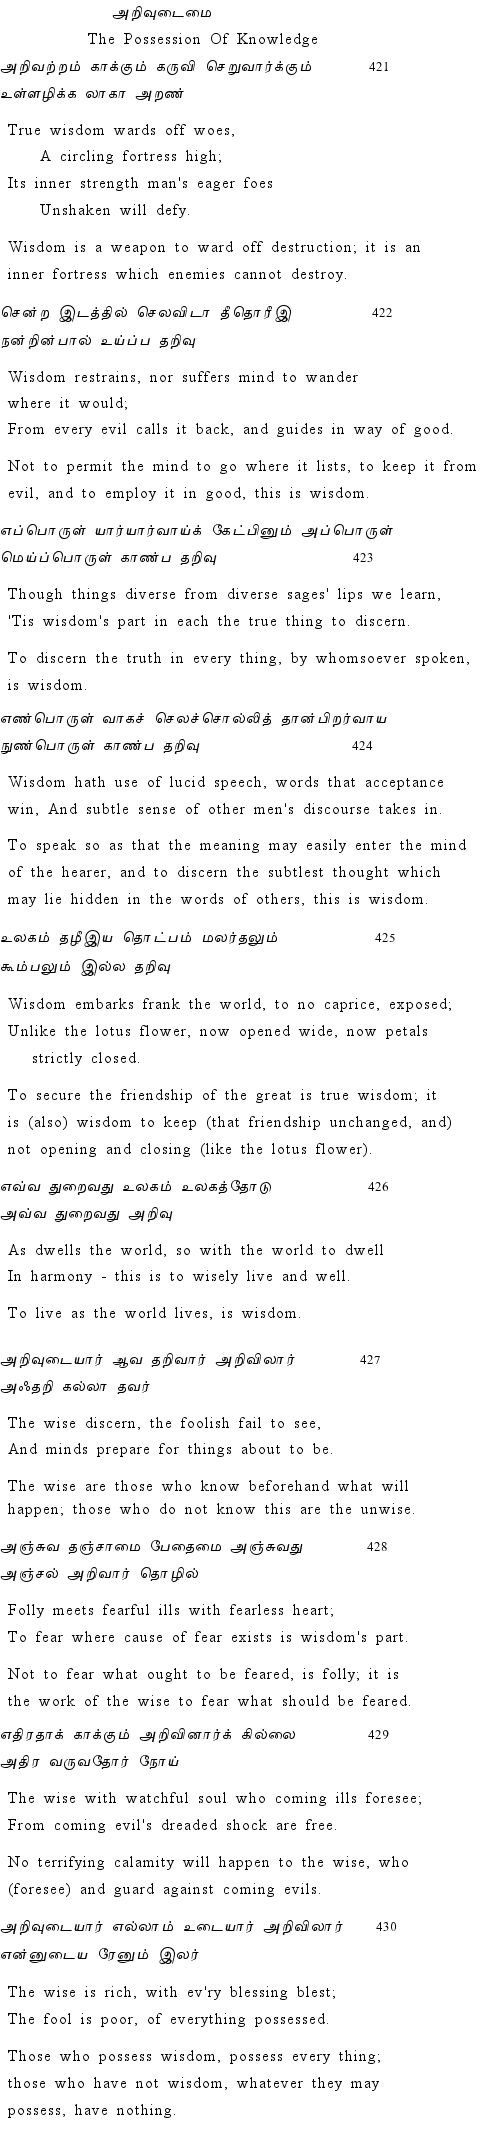 Text of Adhikaram 43